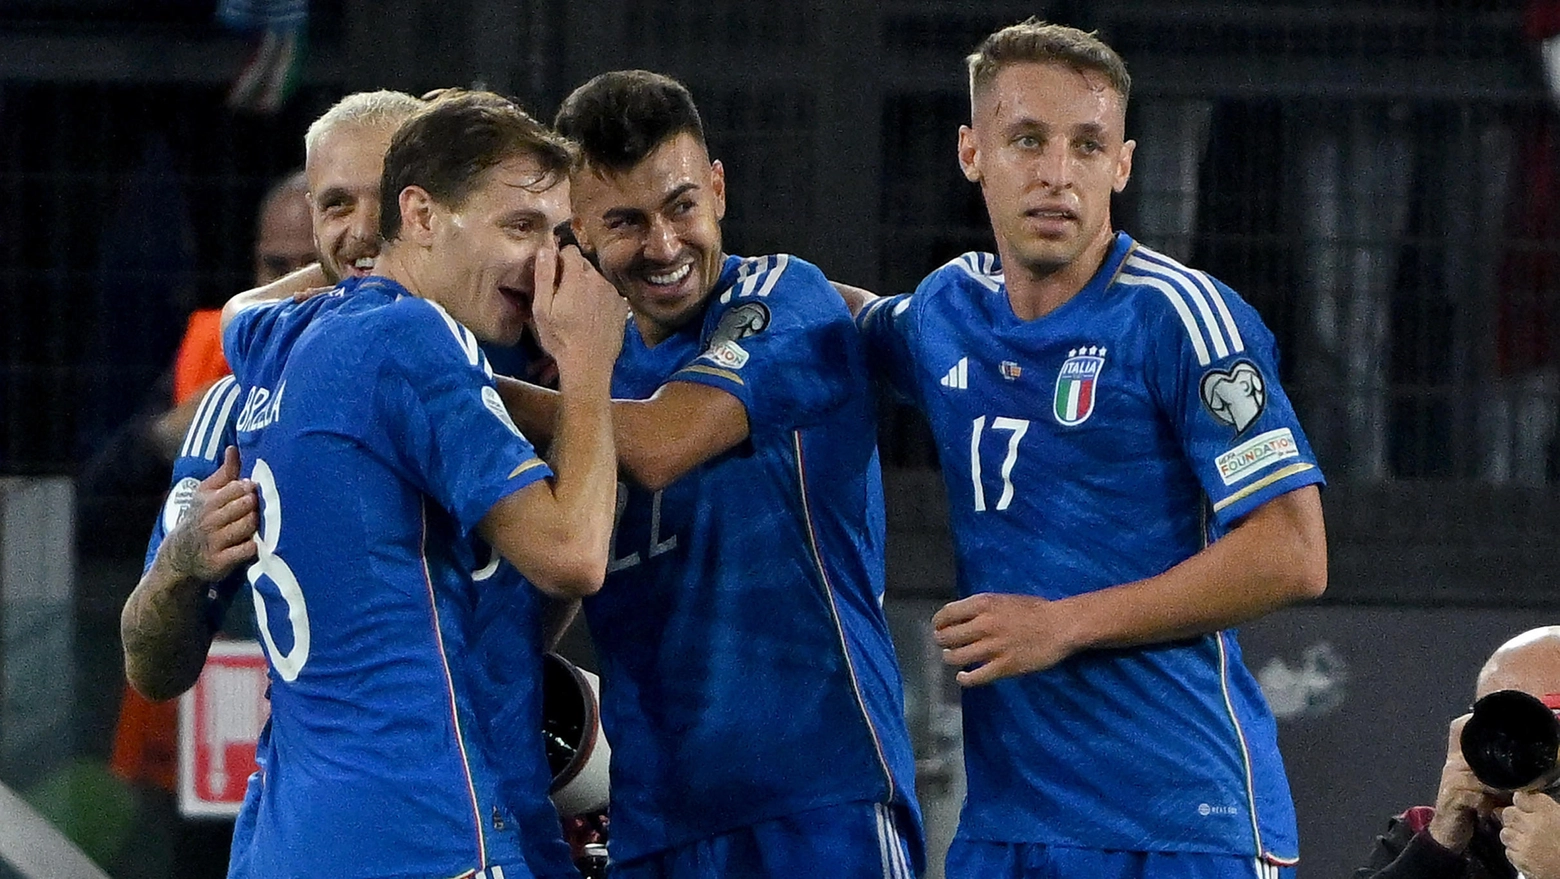 L'esultanza degli azzurri dopo la vittoria sulla Macedonia del Nord per 5-2 (Ansa)